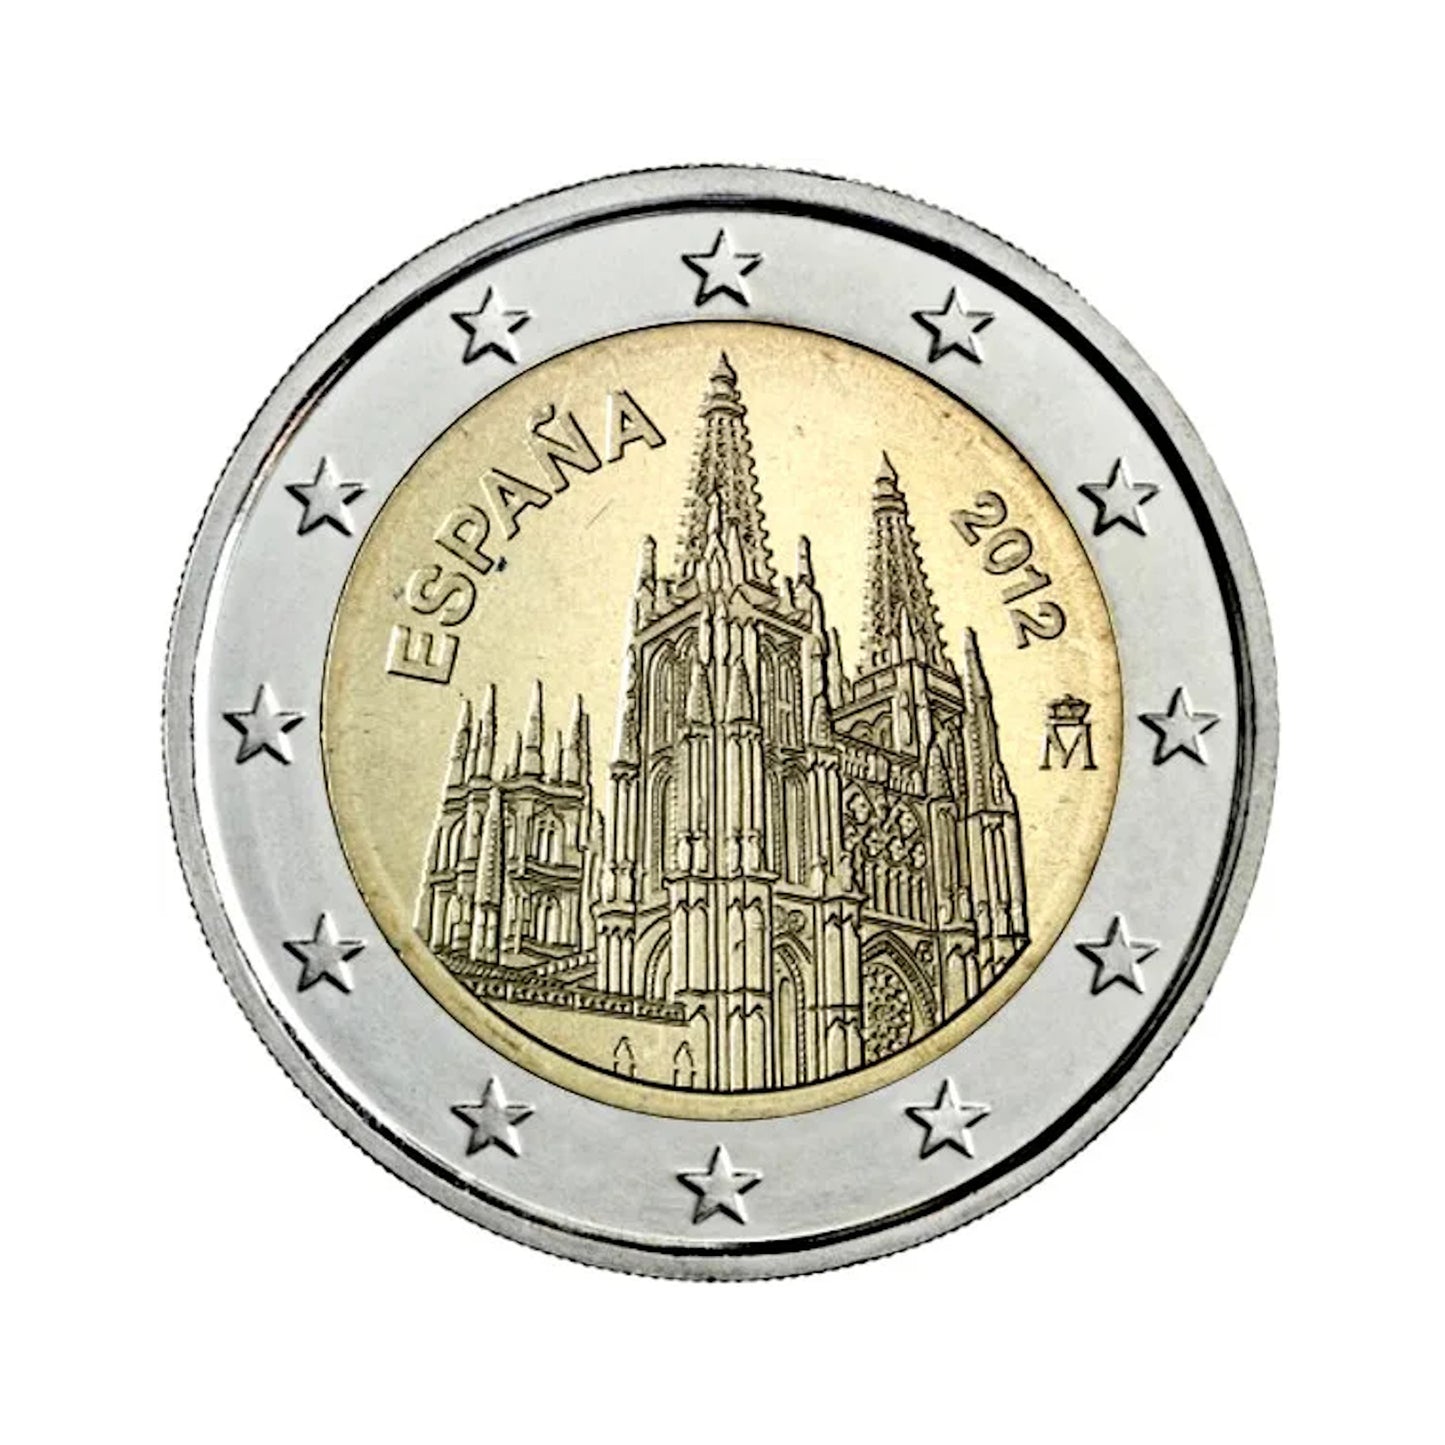 España - Moneda 2 euros conmemorativa 2012 - Catedral de Burgos